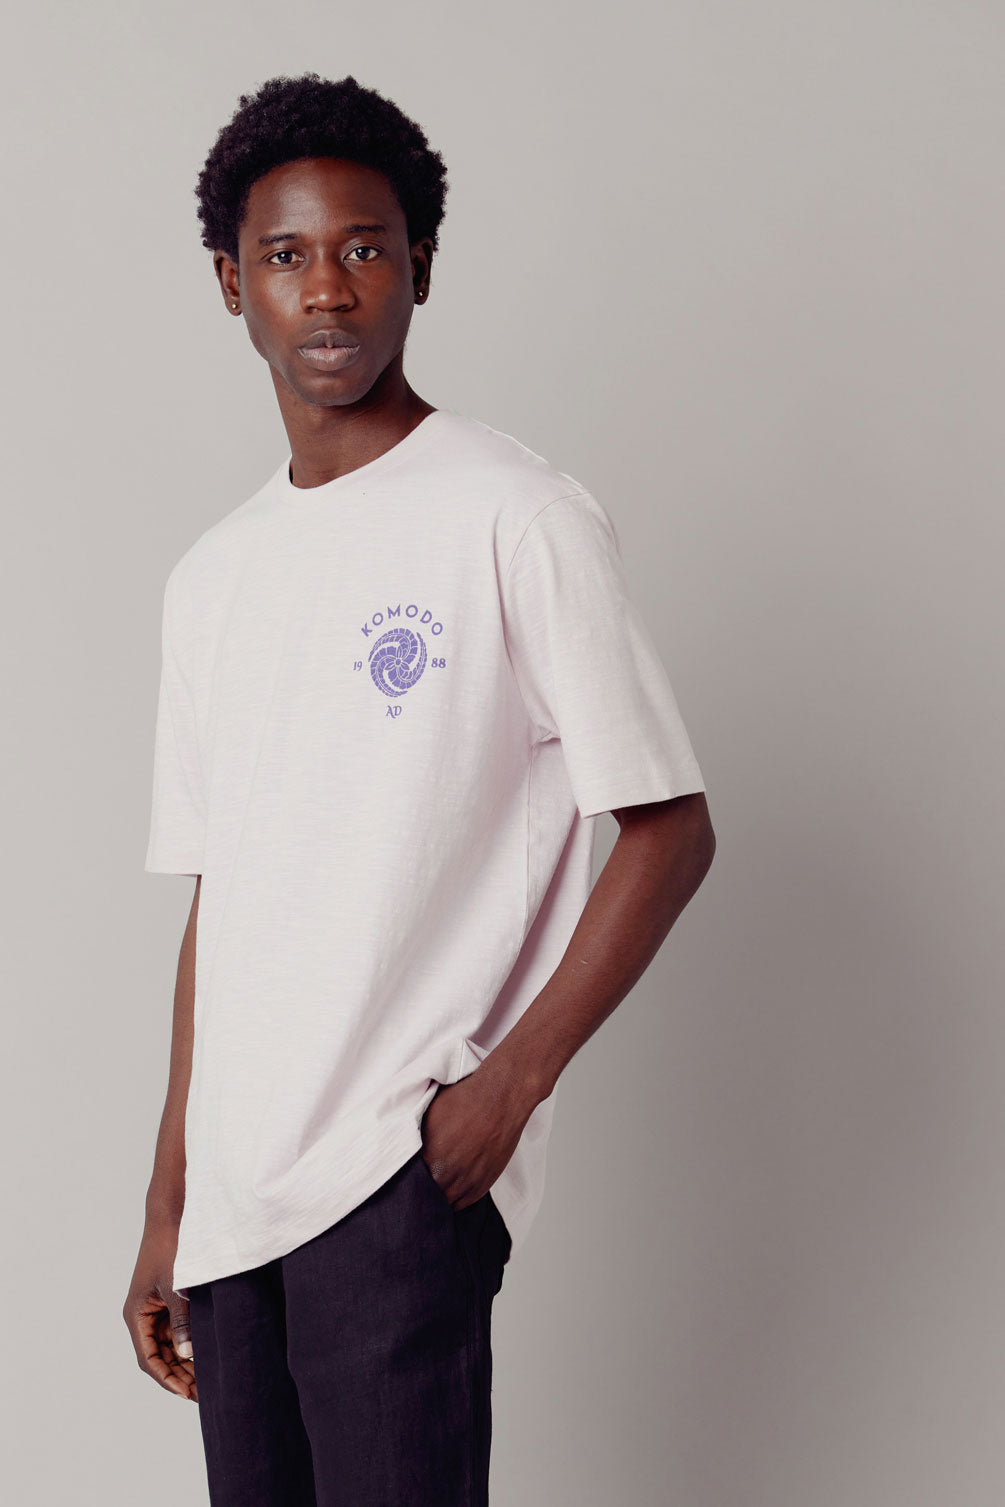 Rosa T-Shirt CREST aus Bio-Baumwolle von Komodo